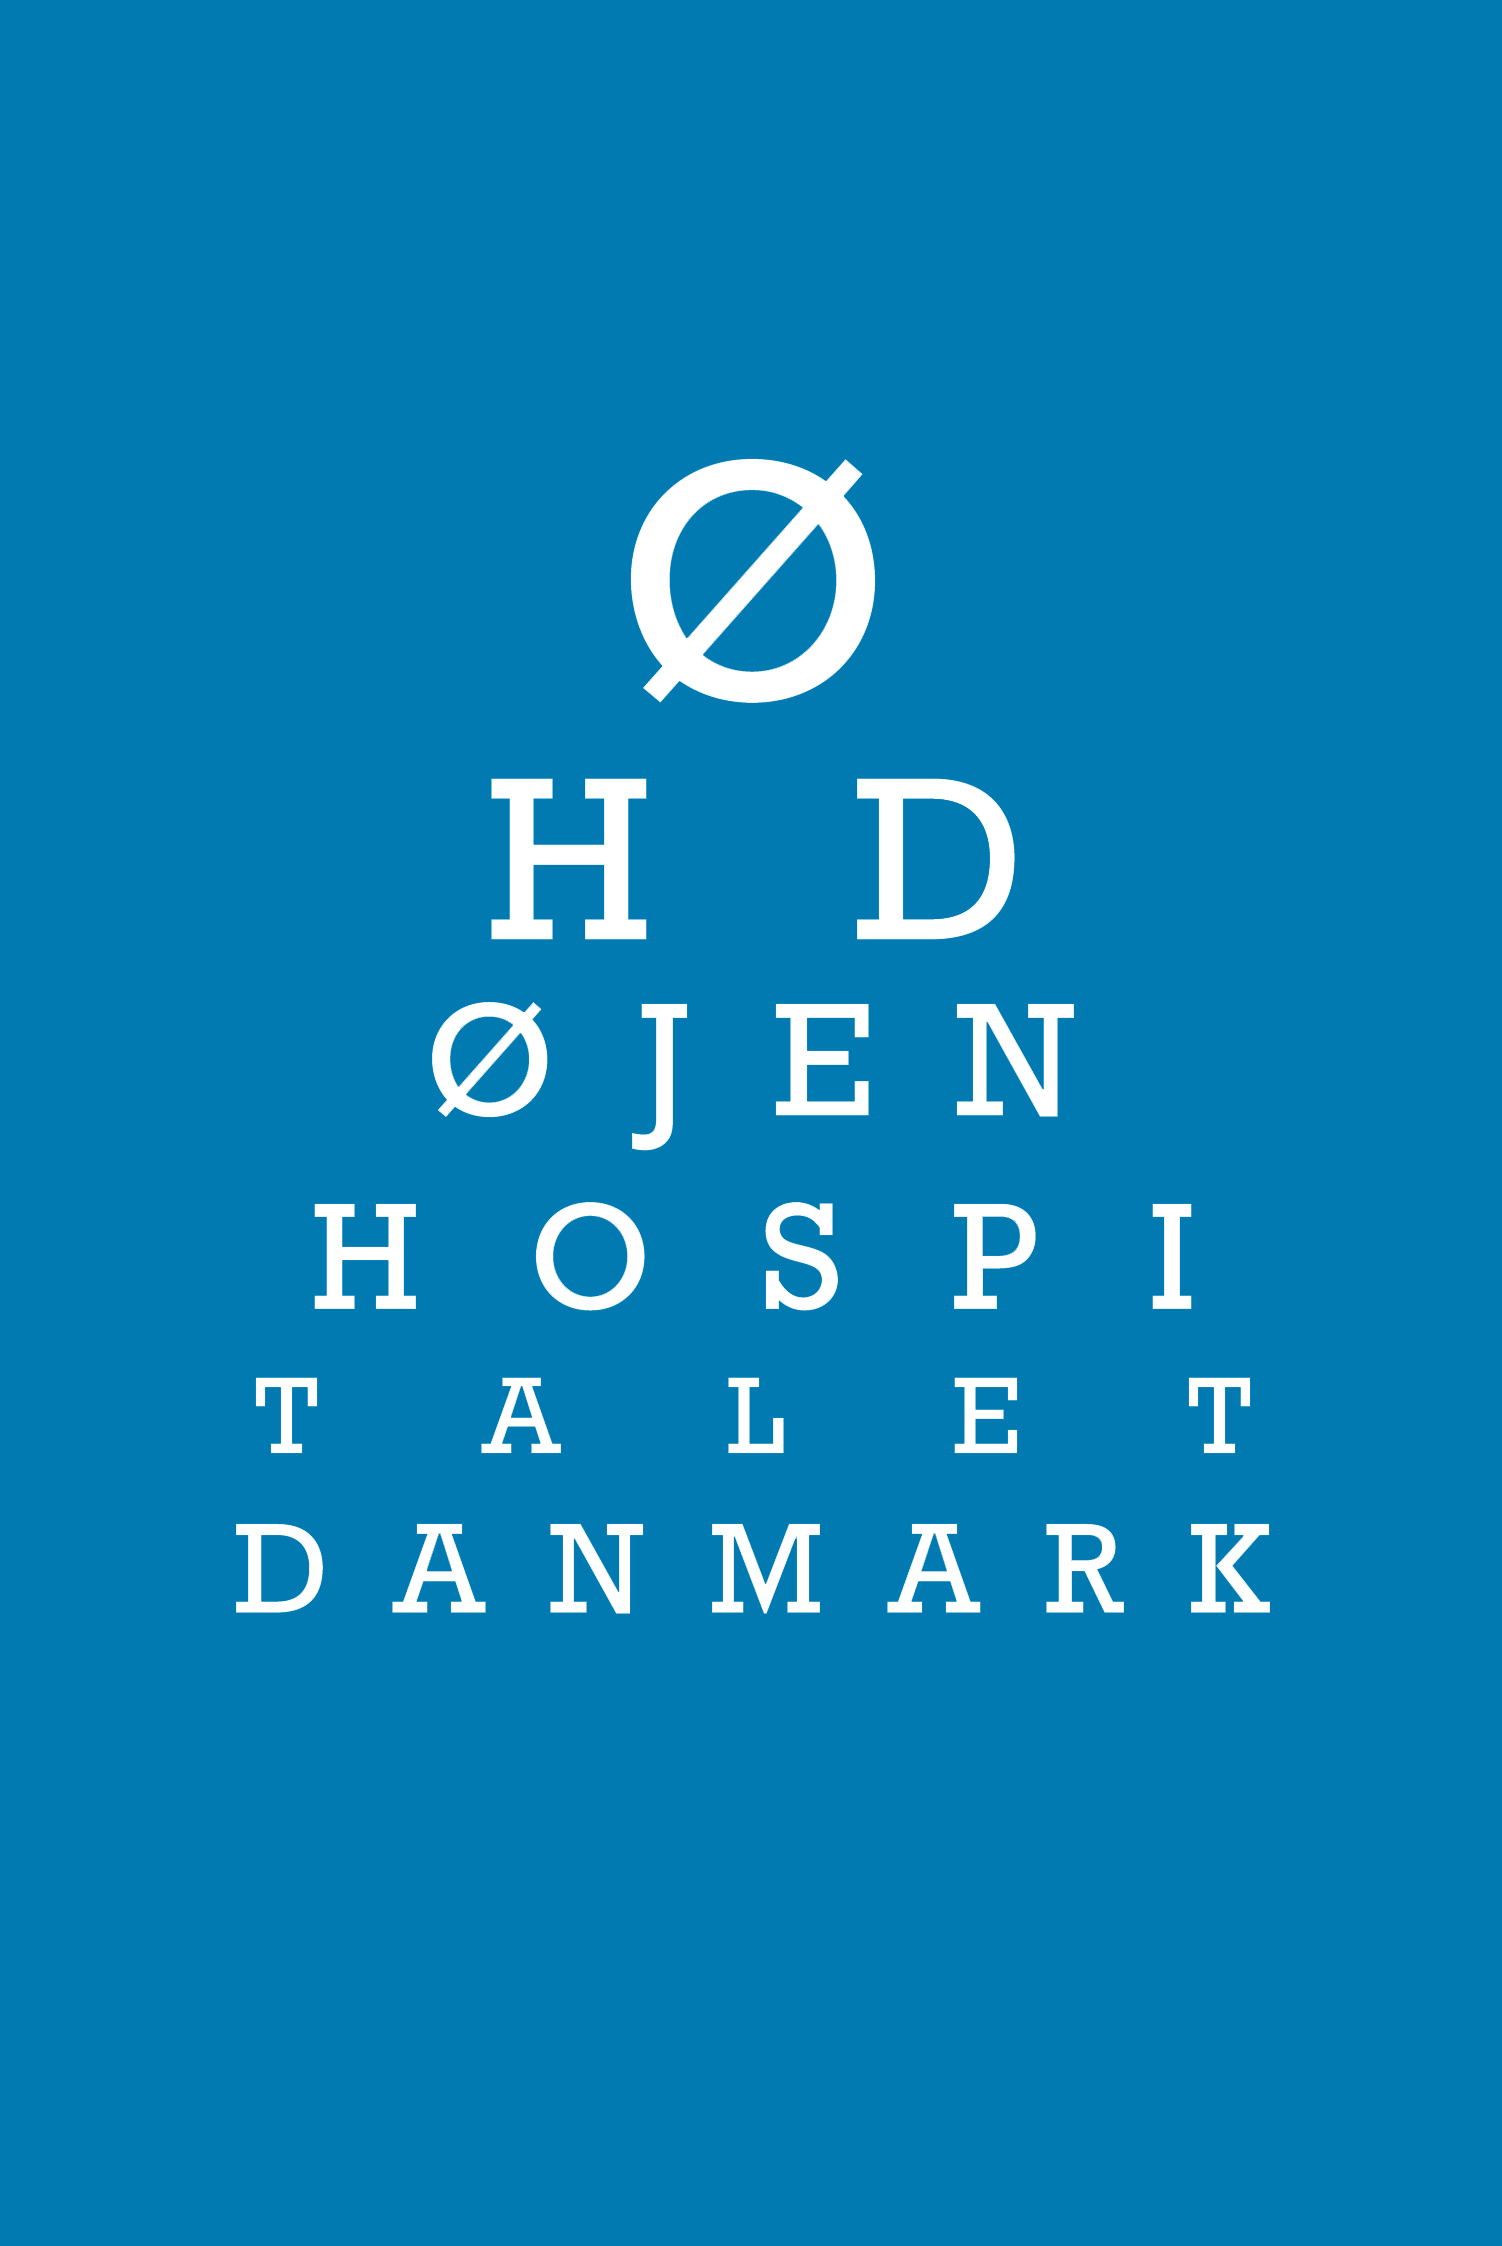 ØHD Logo